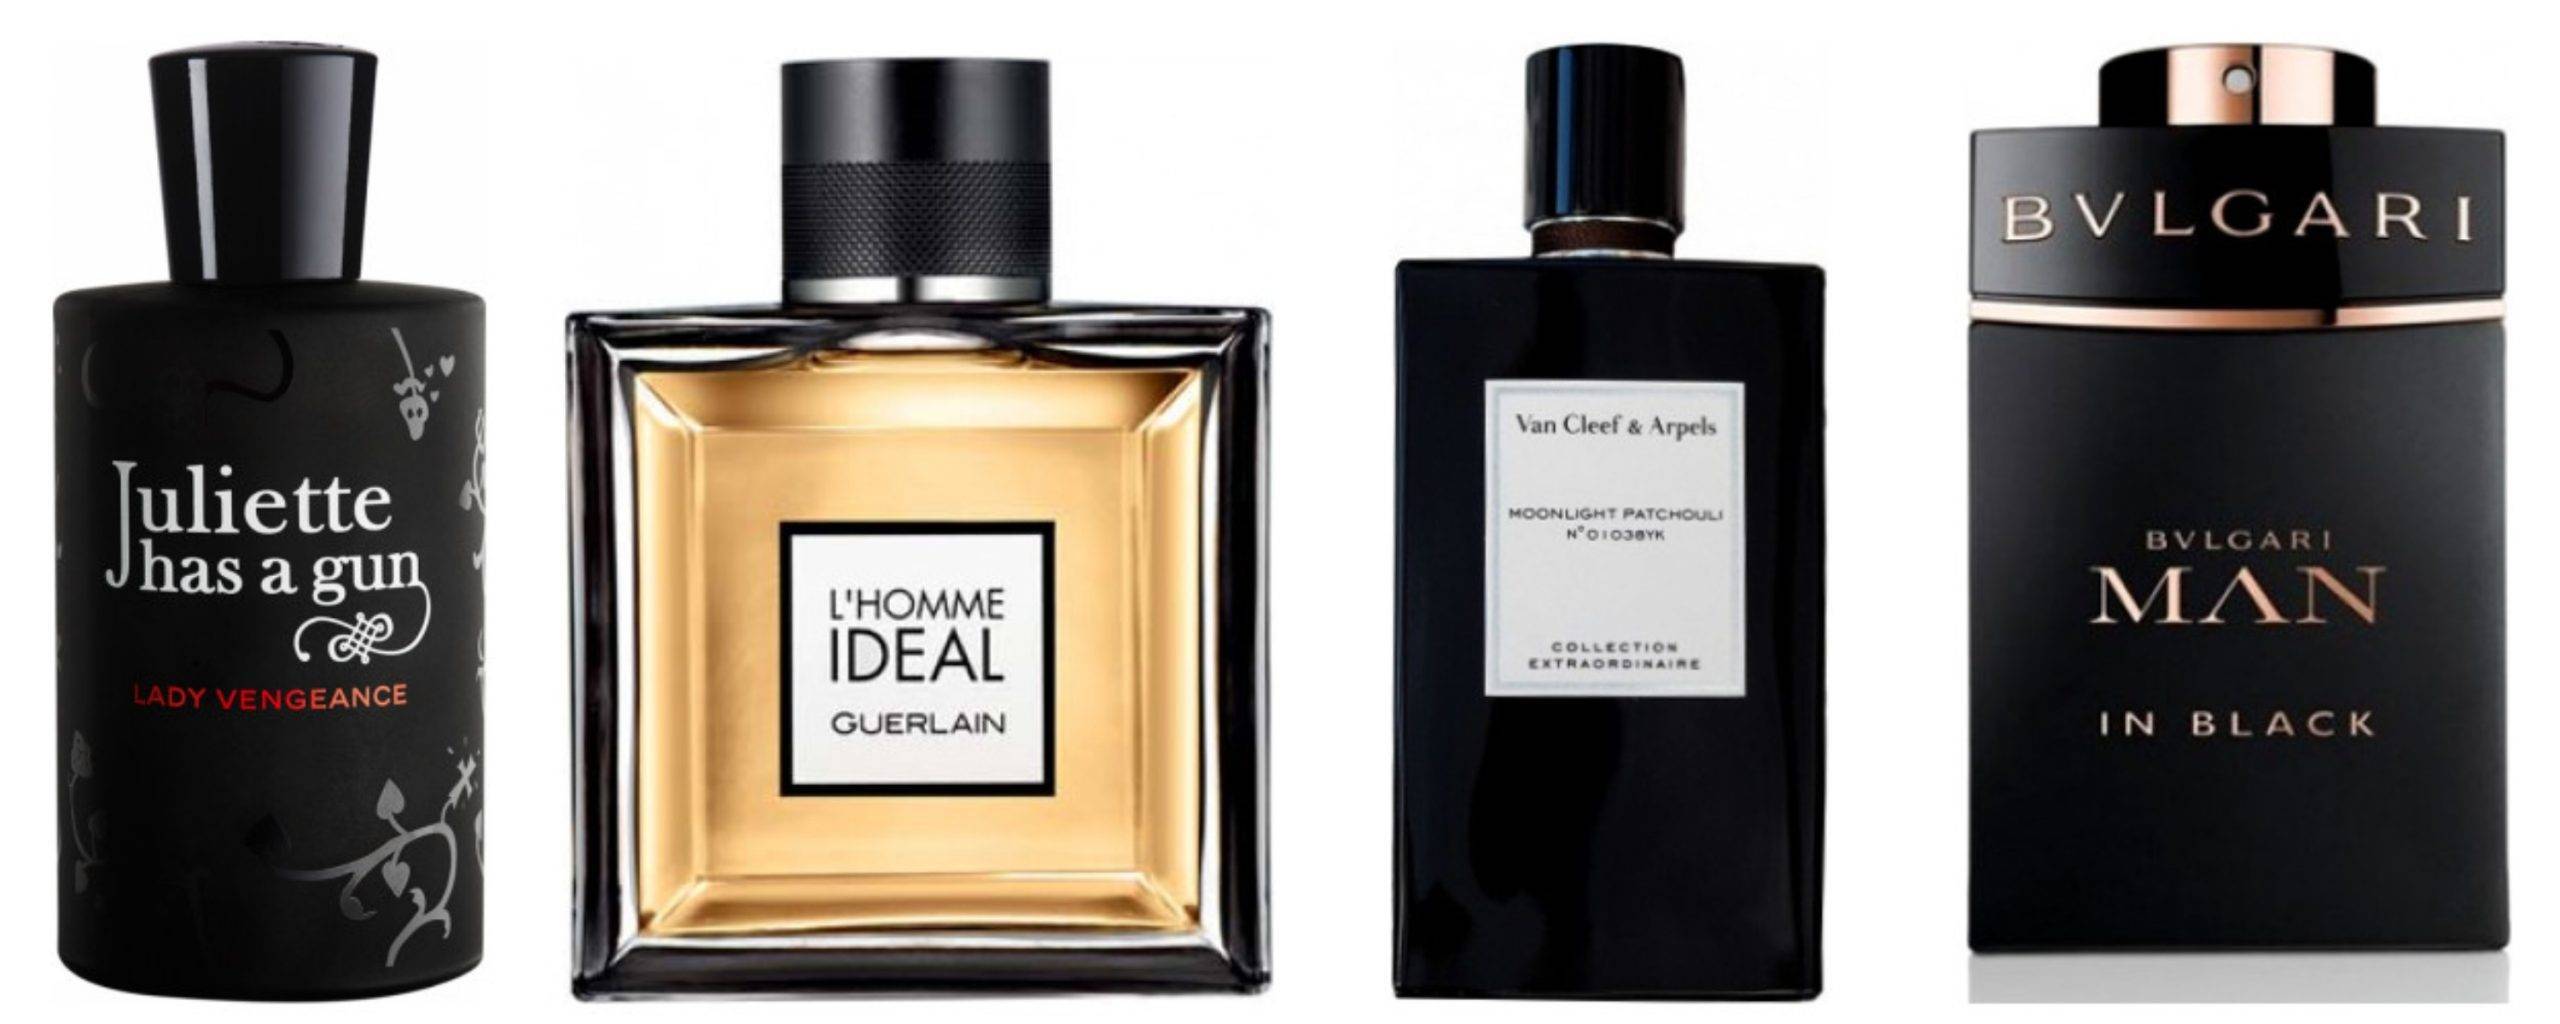 Parfumuri ideale pentru ținutele de tip all-black atât pentru femei, cât și pentru bărbați